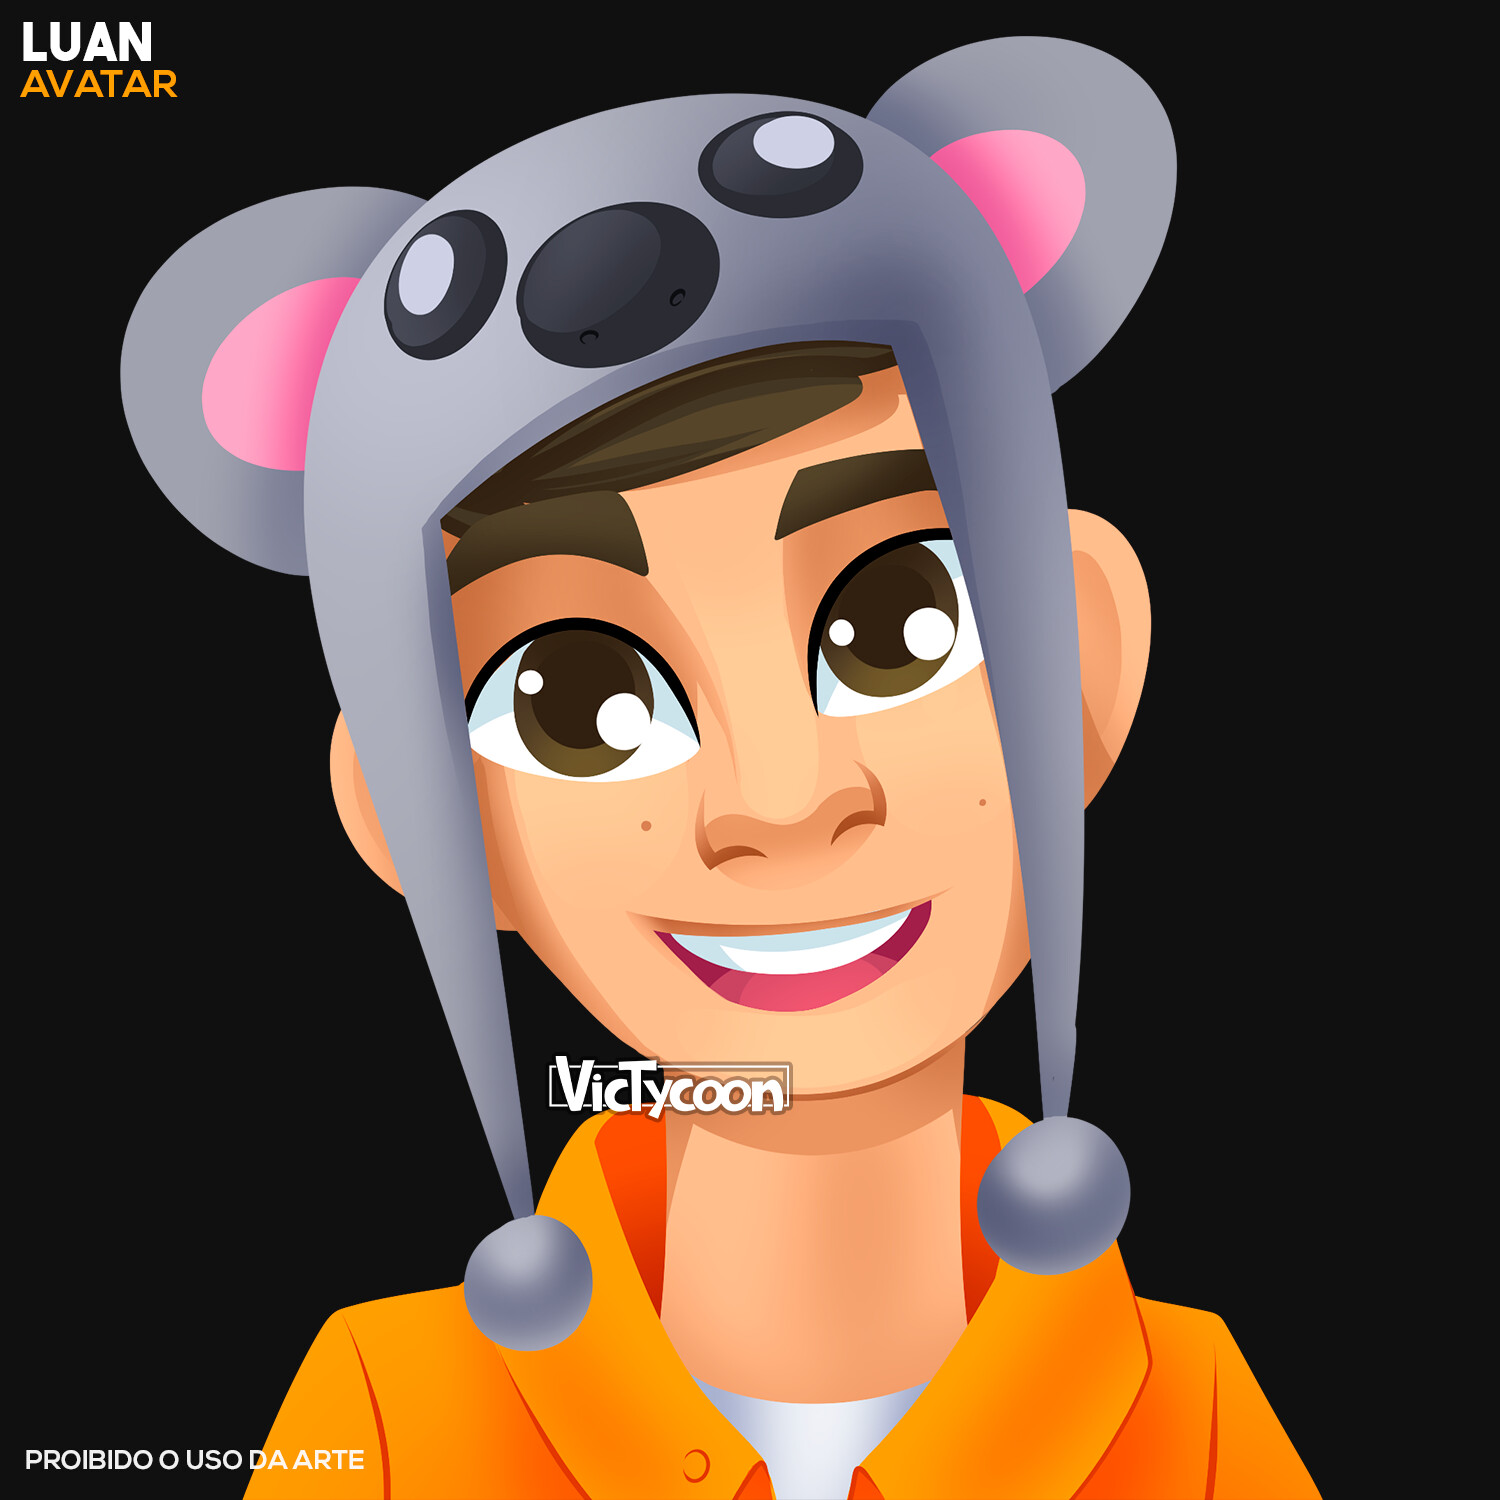 Artstation Avatar Luan Victycoon Art - roblox avatar v3